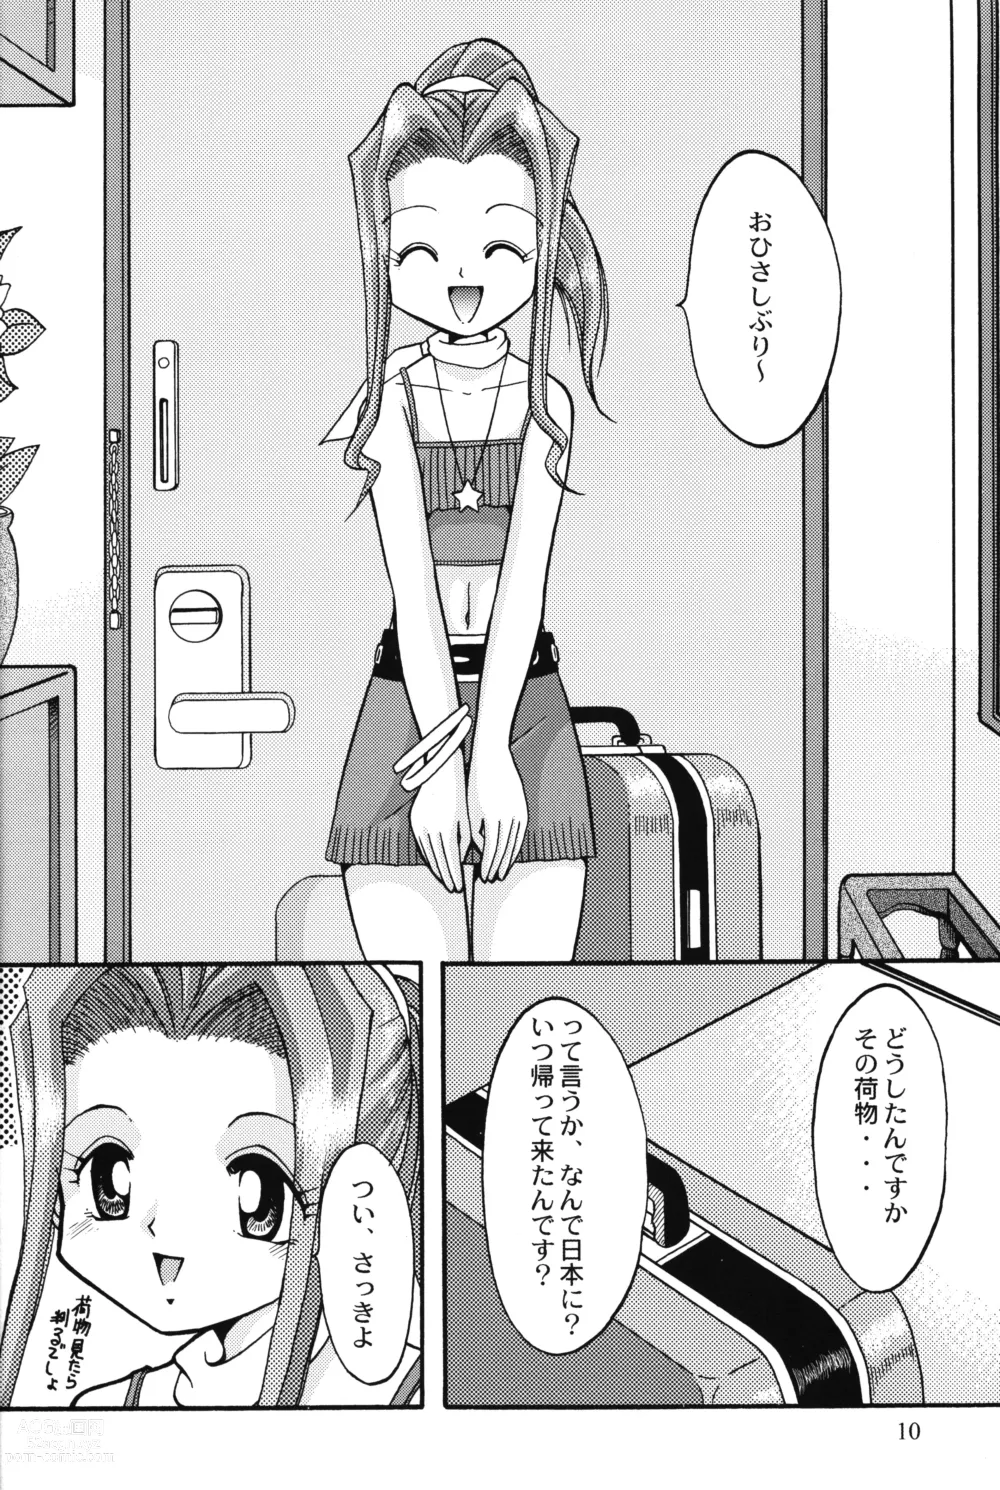 Page 9 of doujinshi Sora Mimi Hour 4